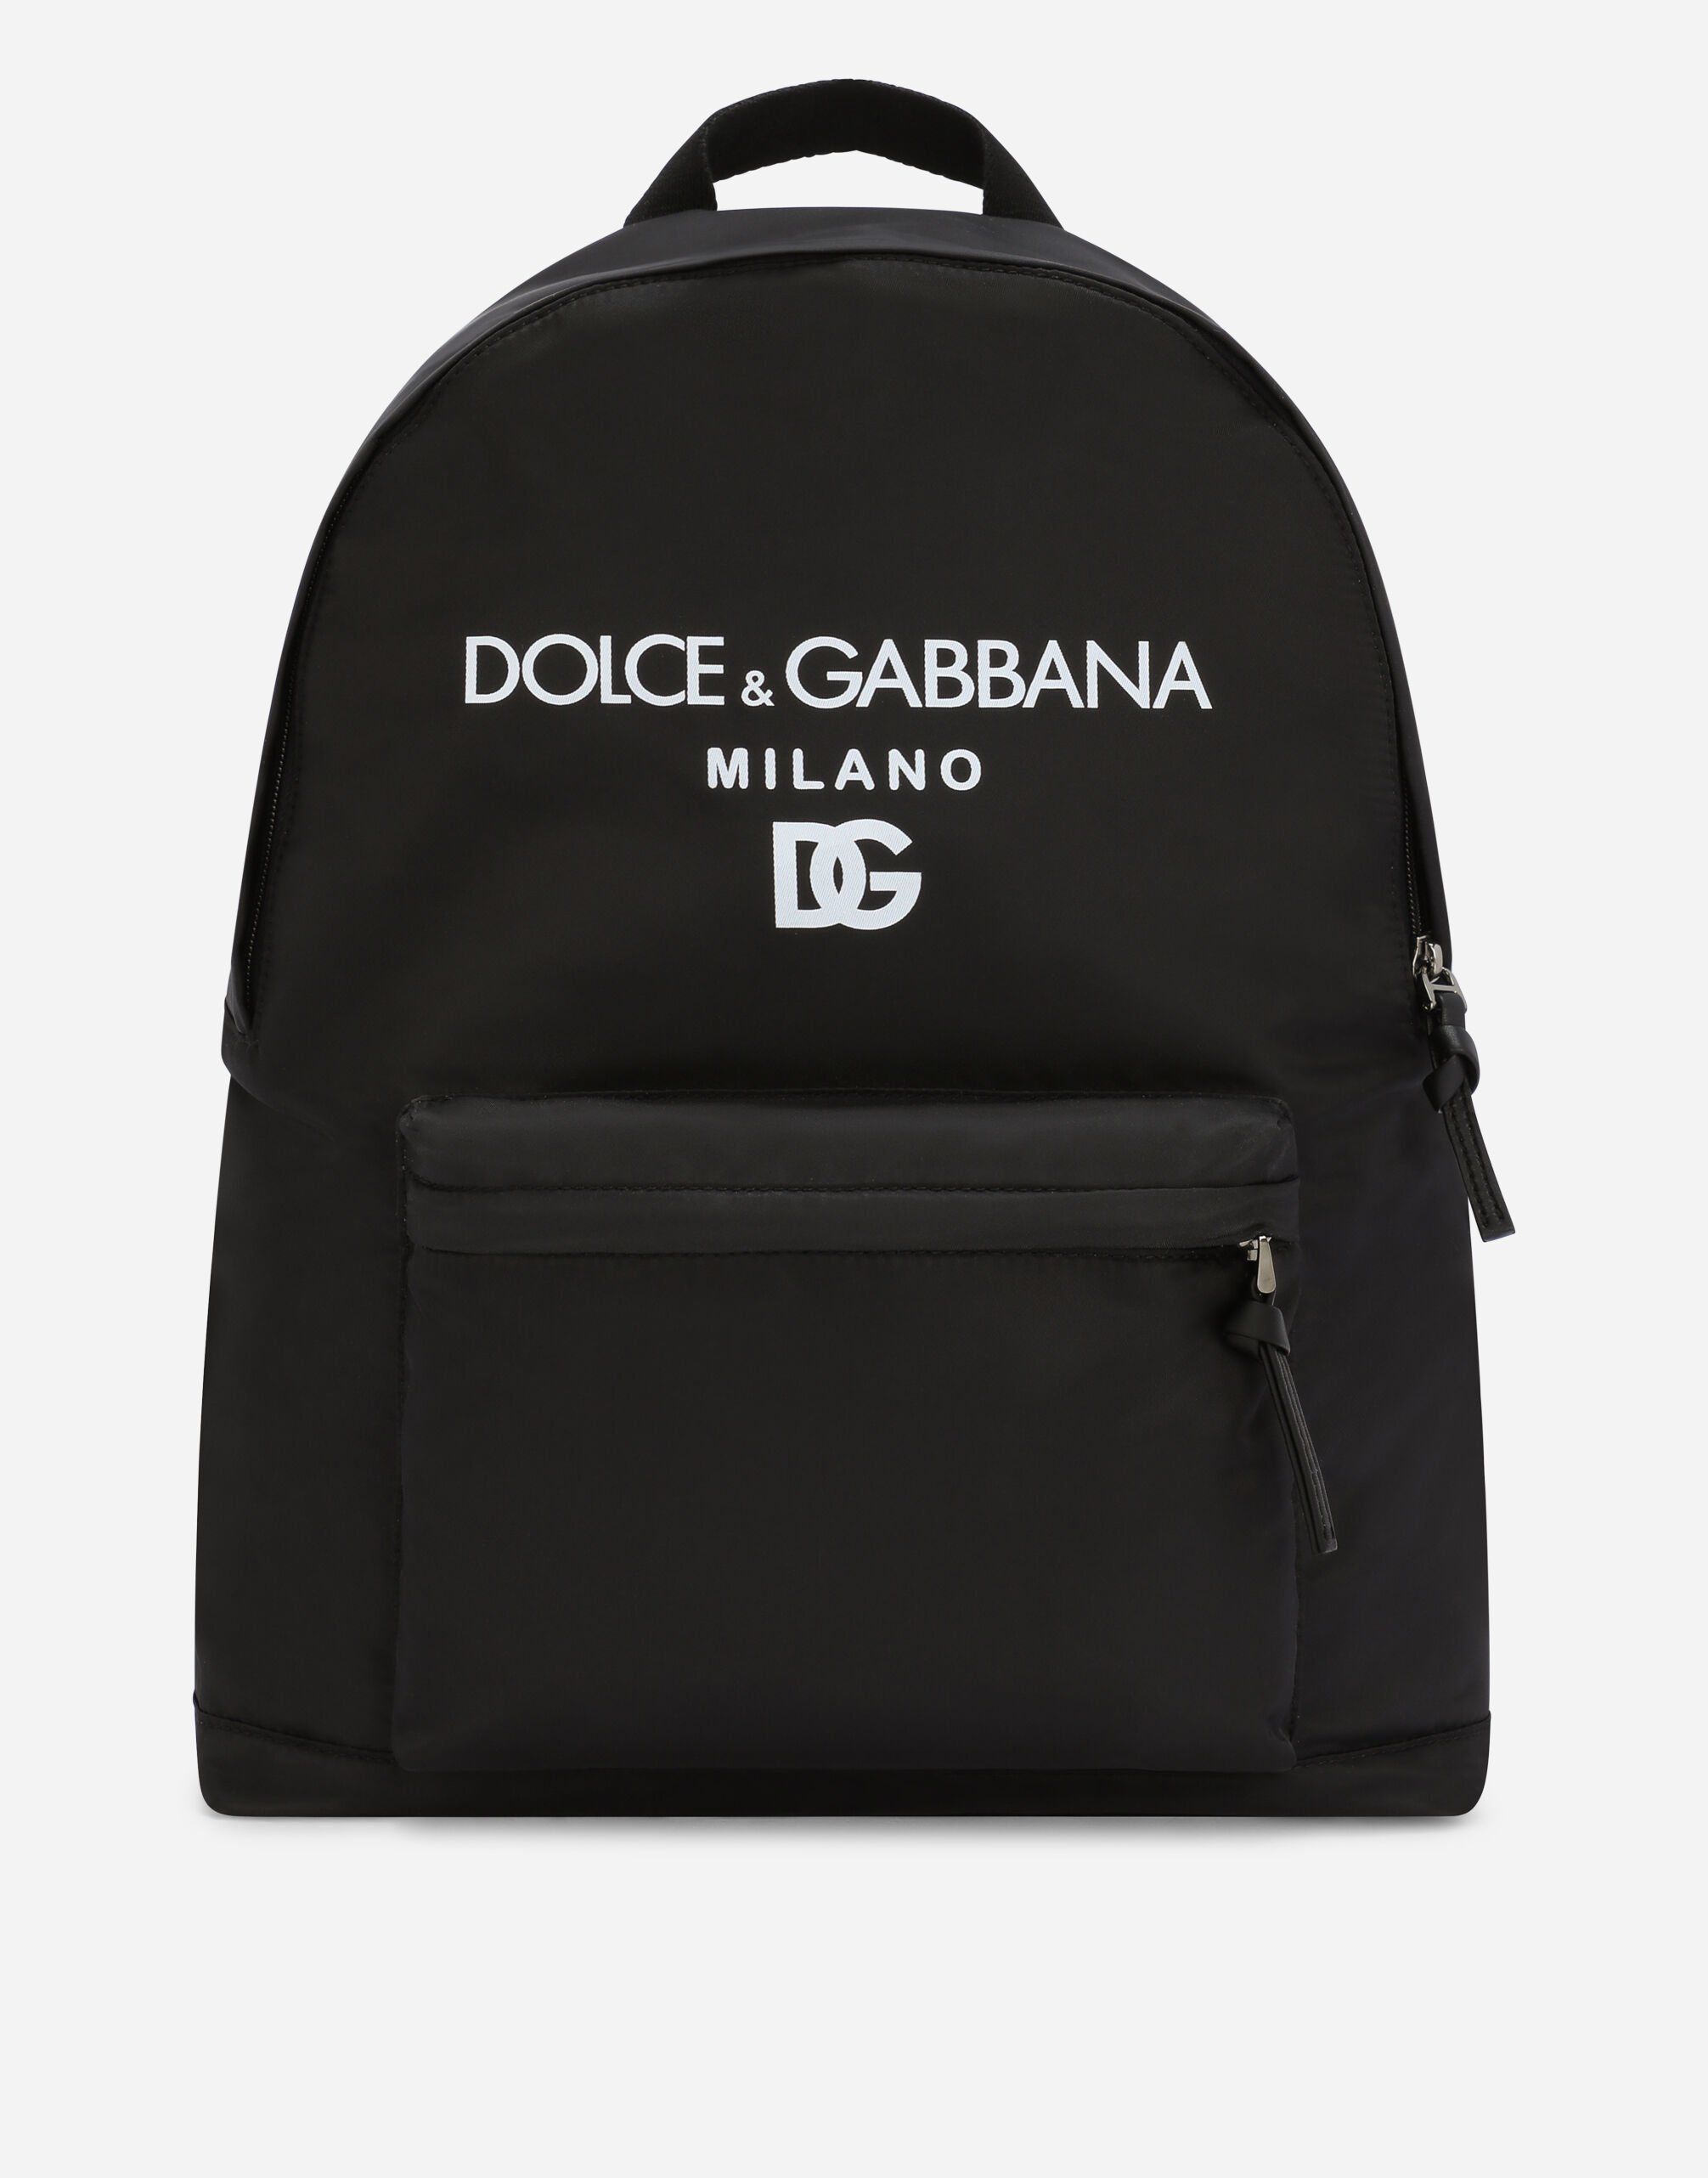 Dolce & Gabbana Zaino in nylon  stampa Dolce&Gabbana Milano Bianco LB4H80G7NWB